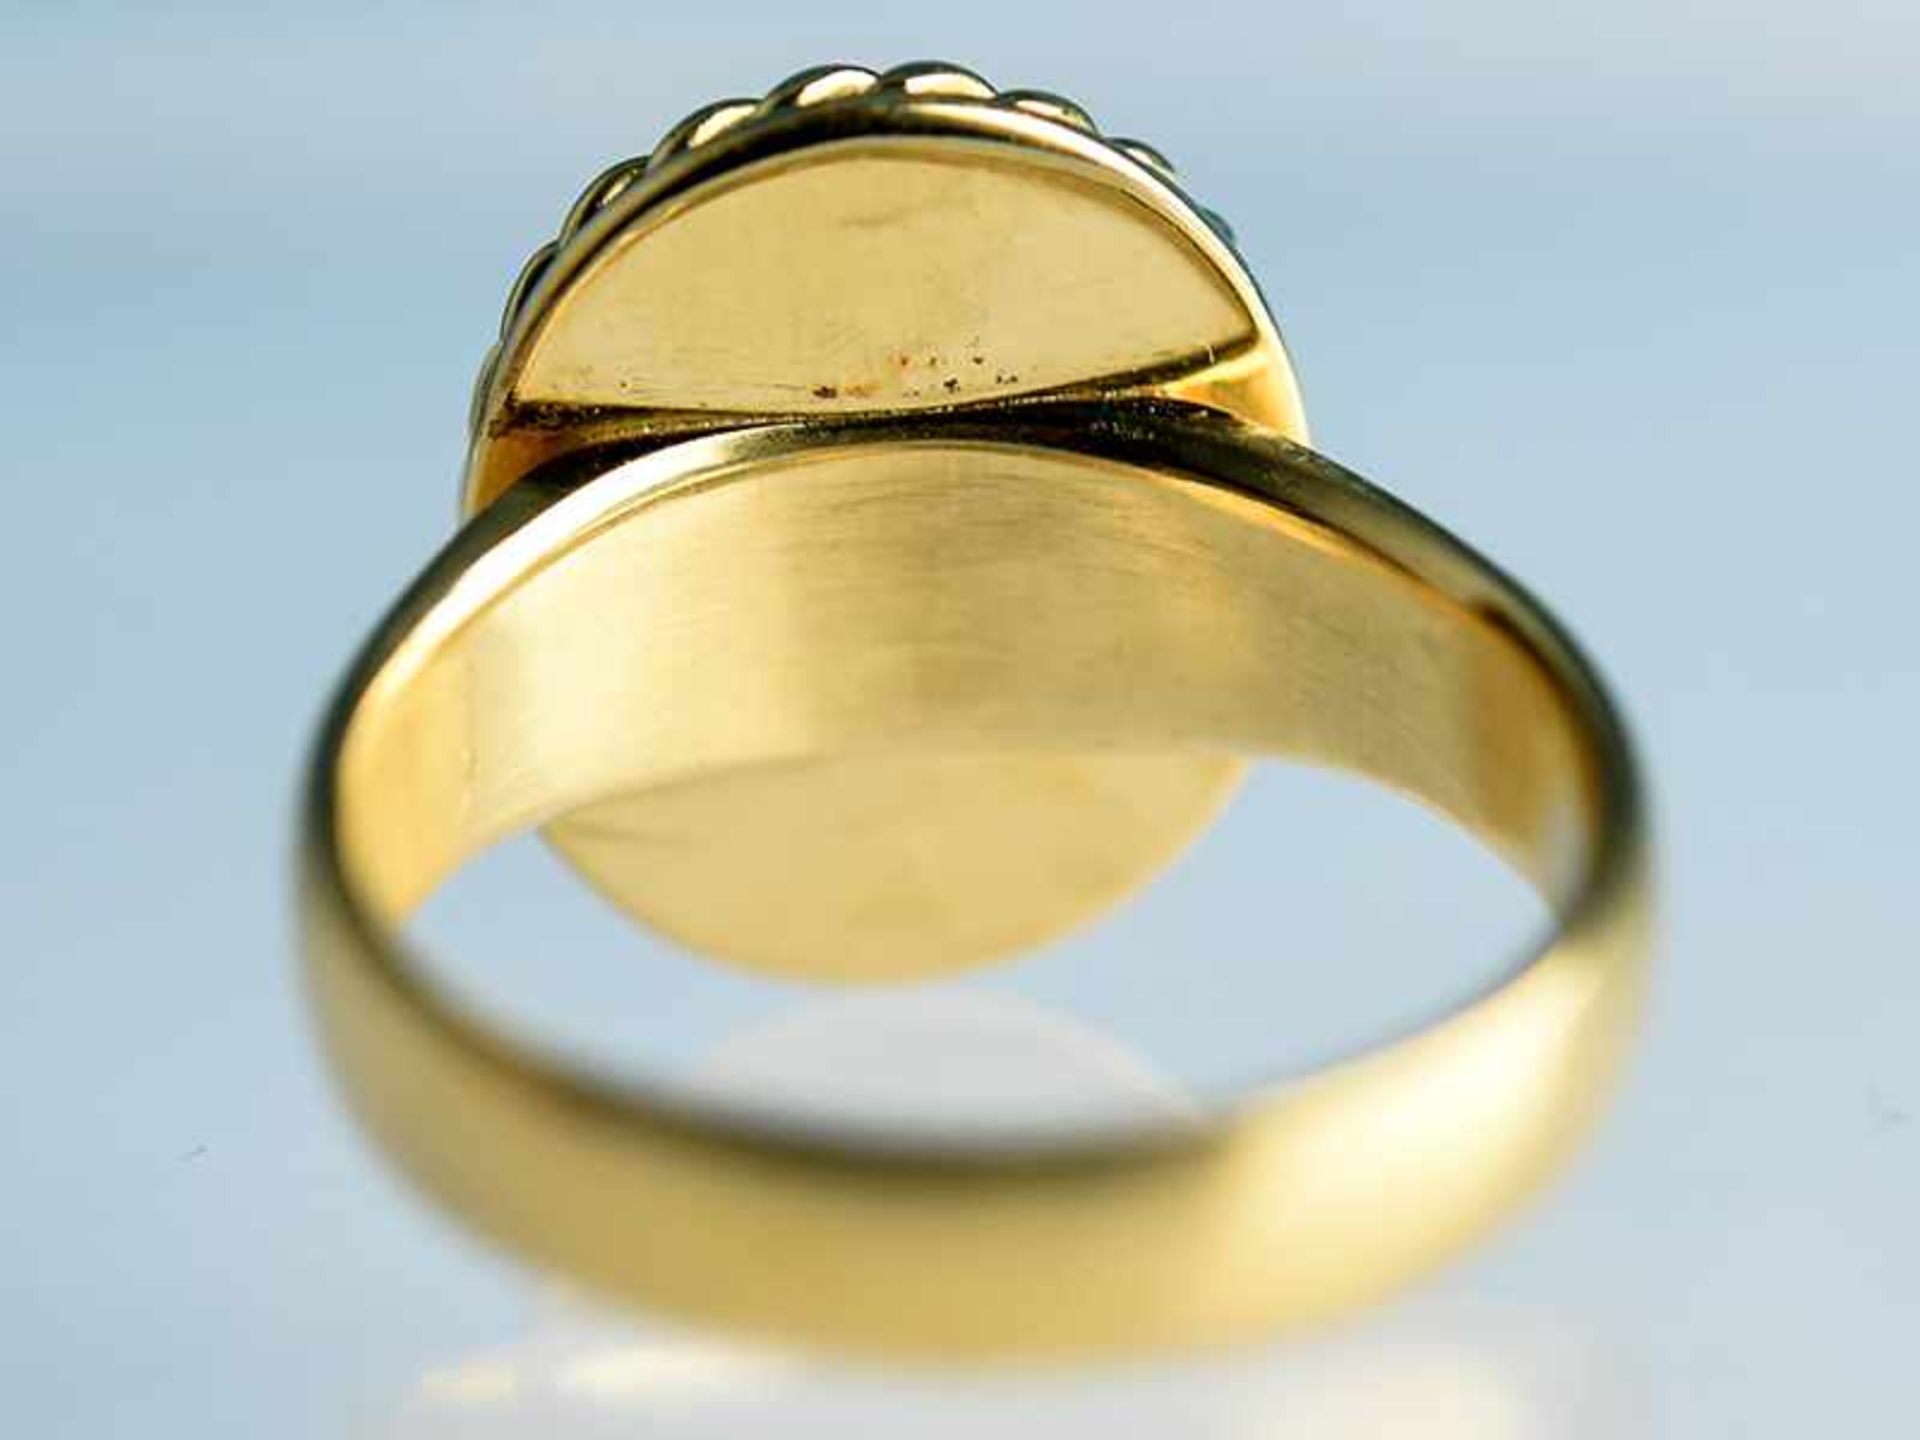 Ring mit Mondstein-Cabochon, Goldschmiedearbeit, 20. Jh. 750/- Gelbgold. Gesamtgewicht ca. 9,2 g. - Bild 4 aus 6